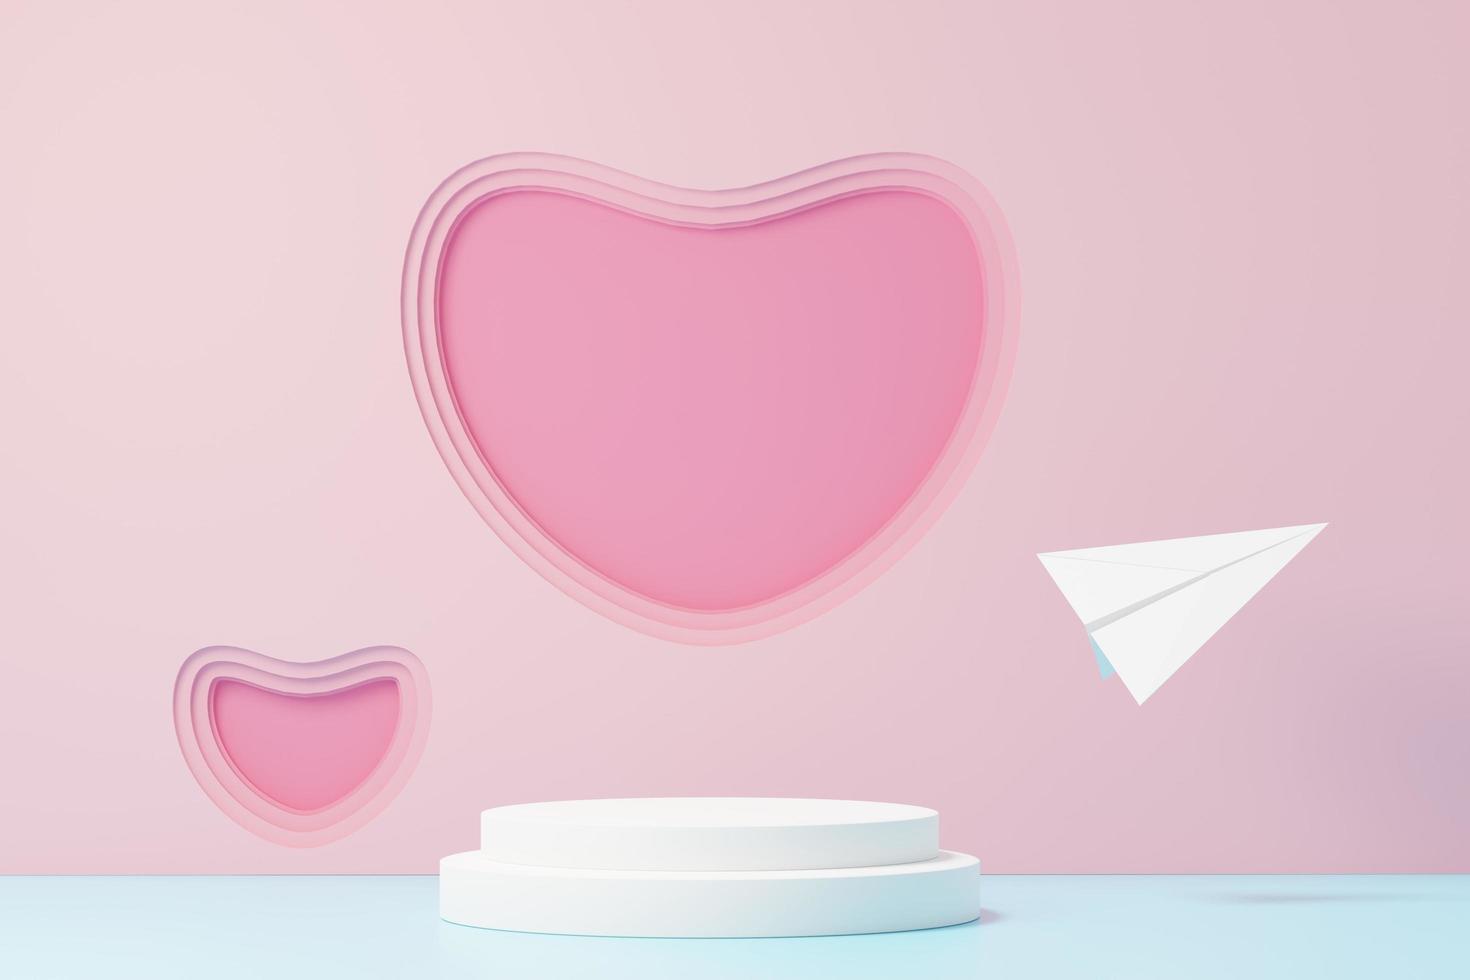 3D renderizar cena doce mínima com pódio de exibição para maquete e apresentação da marca do produto. pedestal rosa para o tema do dia dos namorados. fundo de coração lindo bonito. amo o estilo de design do dia. foto